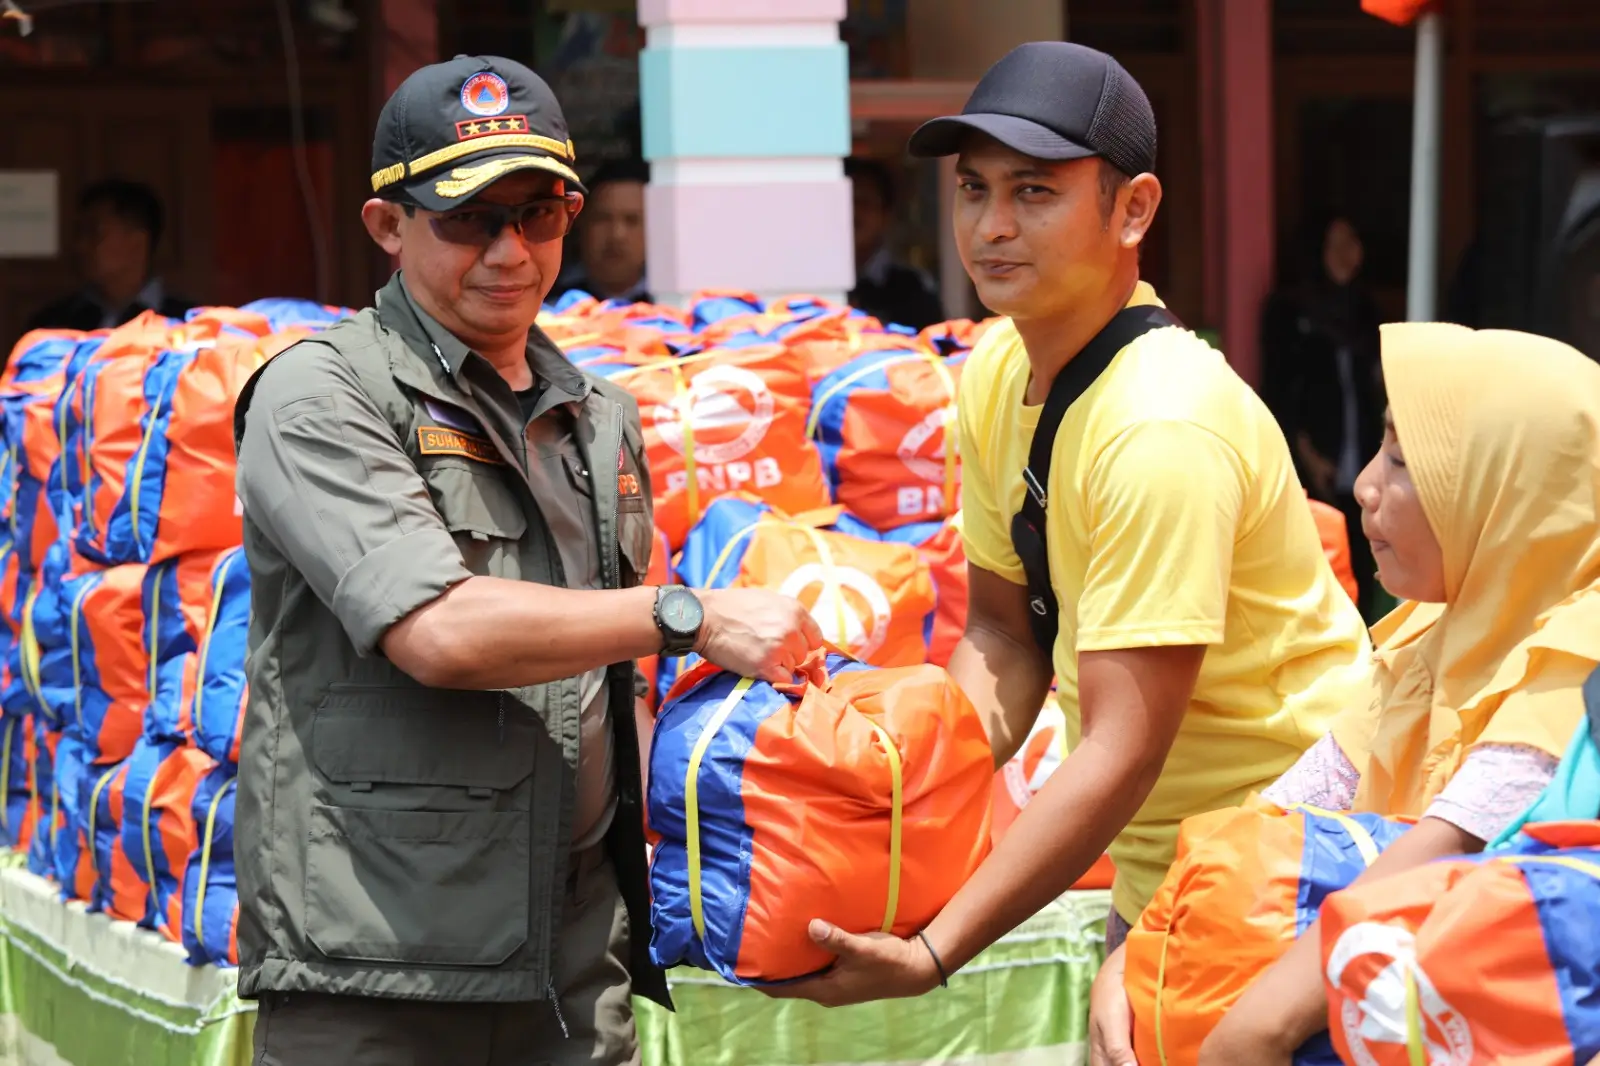 Kepala Badan Nasional Penanggulangan Bencana (BNPB) Letjen TNI Suharyanto saat berada di lokasi pengungsian SMK Ganesha memberikan bantuan paket sembako bagi warga terdampak banjir di Kabupaten Demak, Jawa Tengah pada Rabu (21/2).